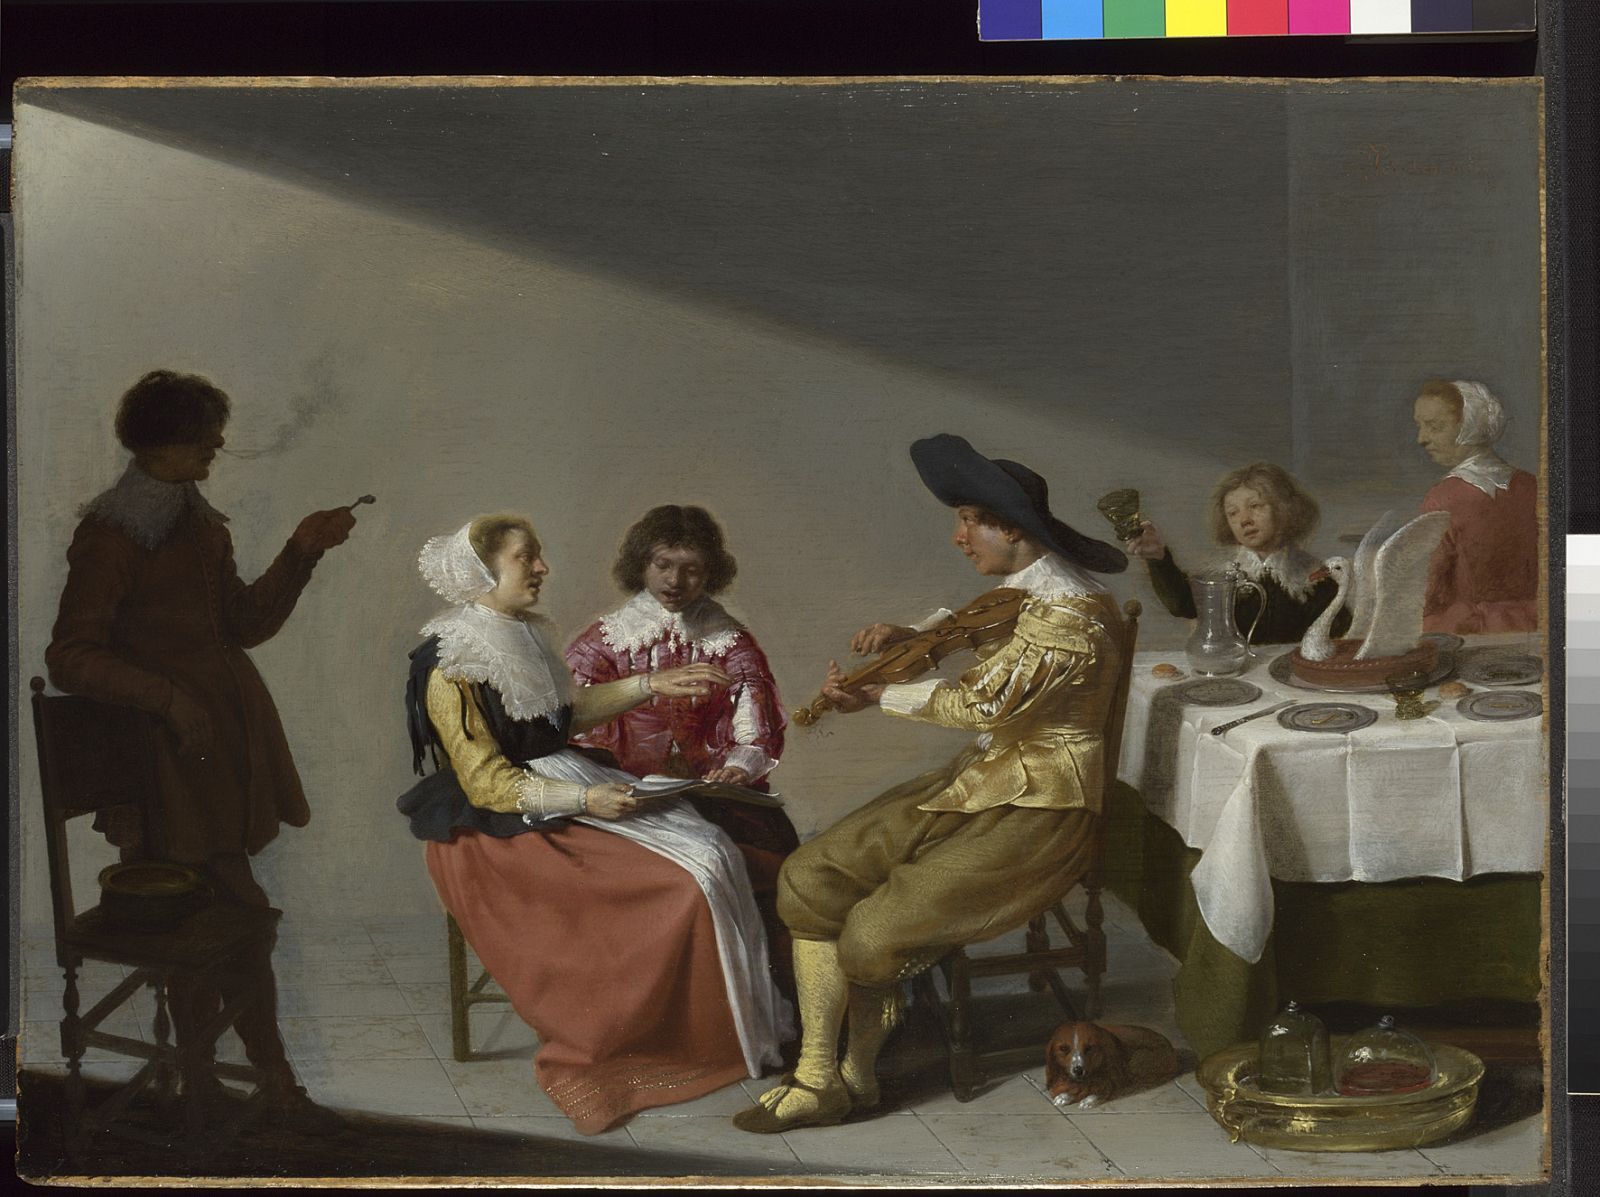 Este cuadro de Jacob van Velsen titulado Una fiesta musical es uno de los que acompaña a los lienzos de Vermeer en la muestra